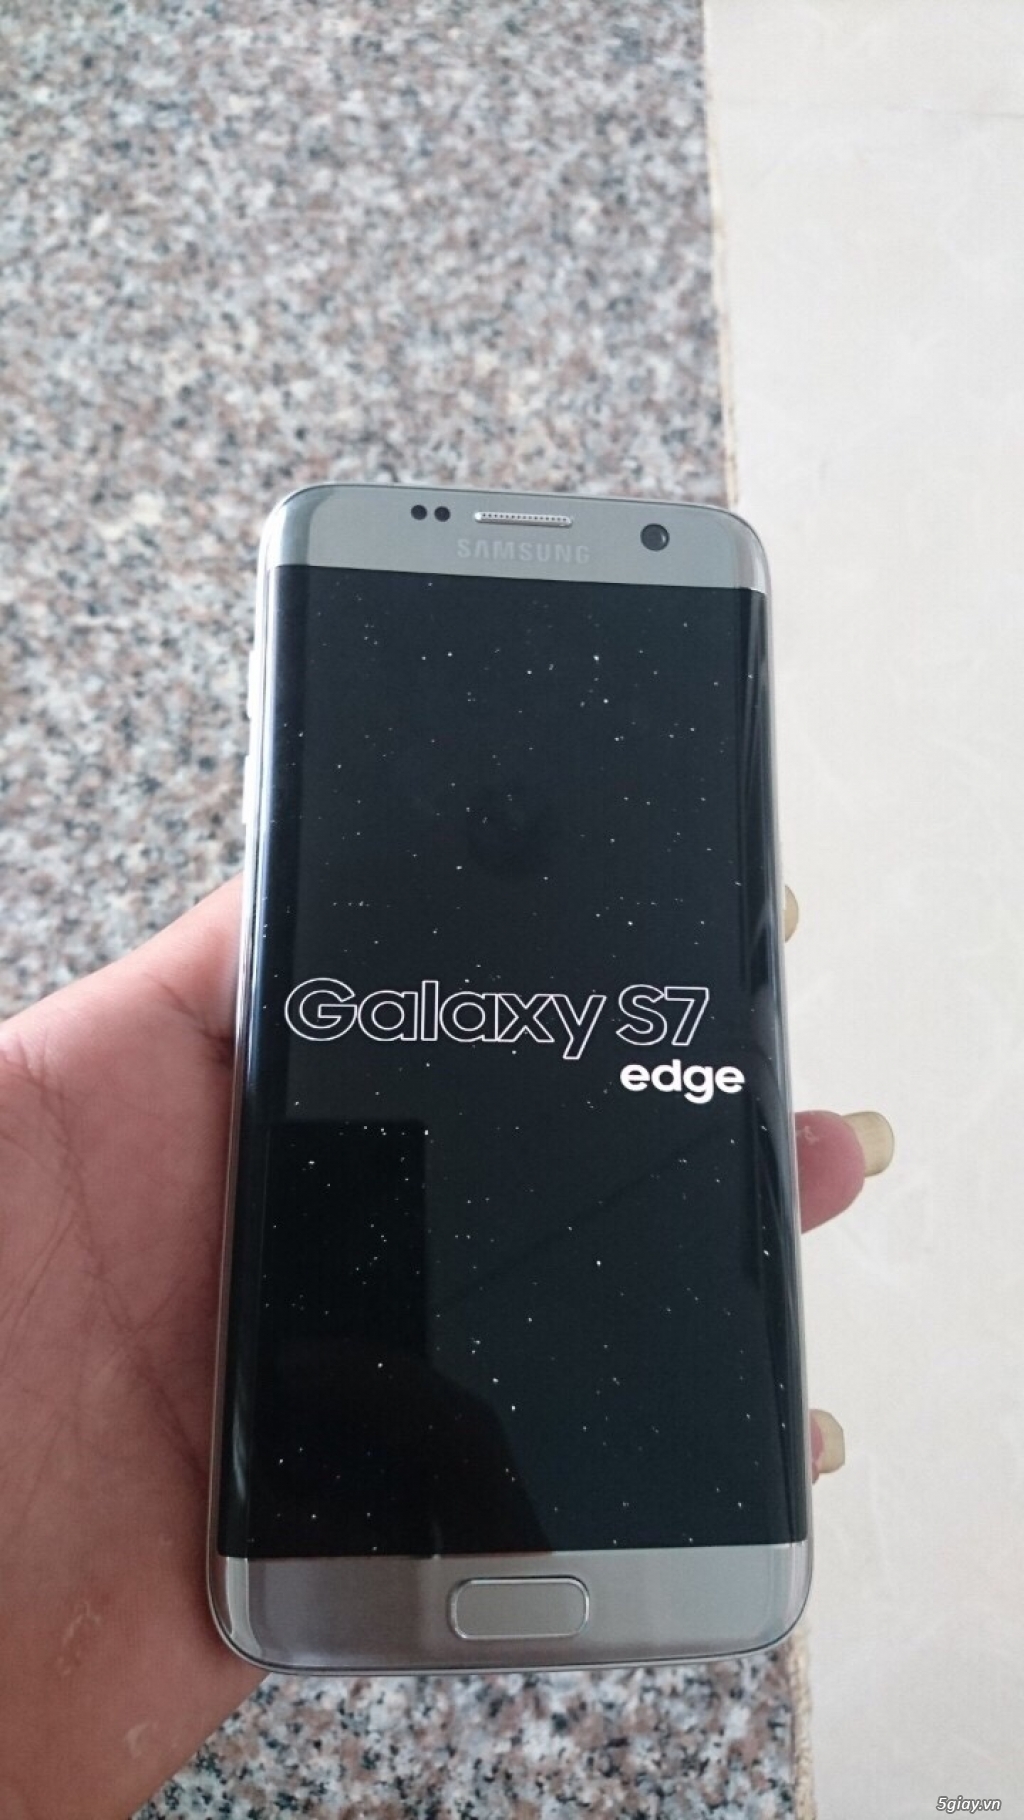 Samsung Galaxy S7 Edge Hàn quốc xách tay 99% nguyên zin - 1